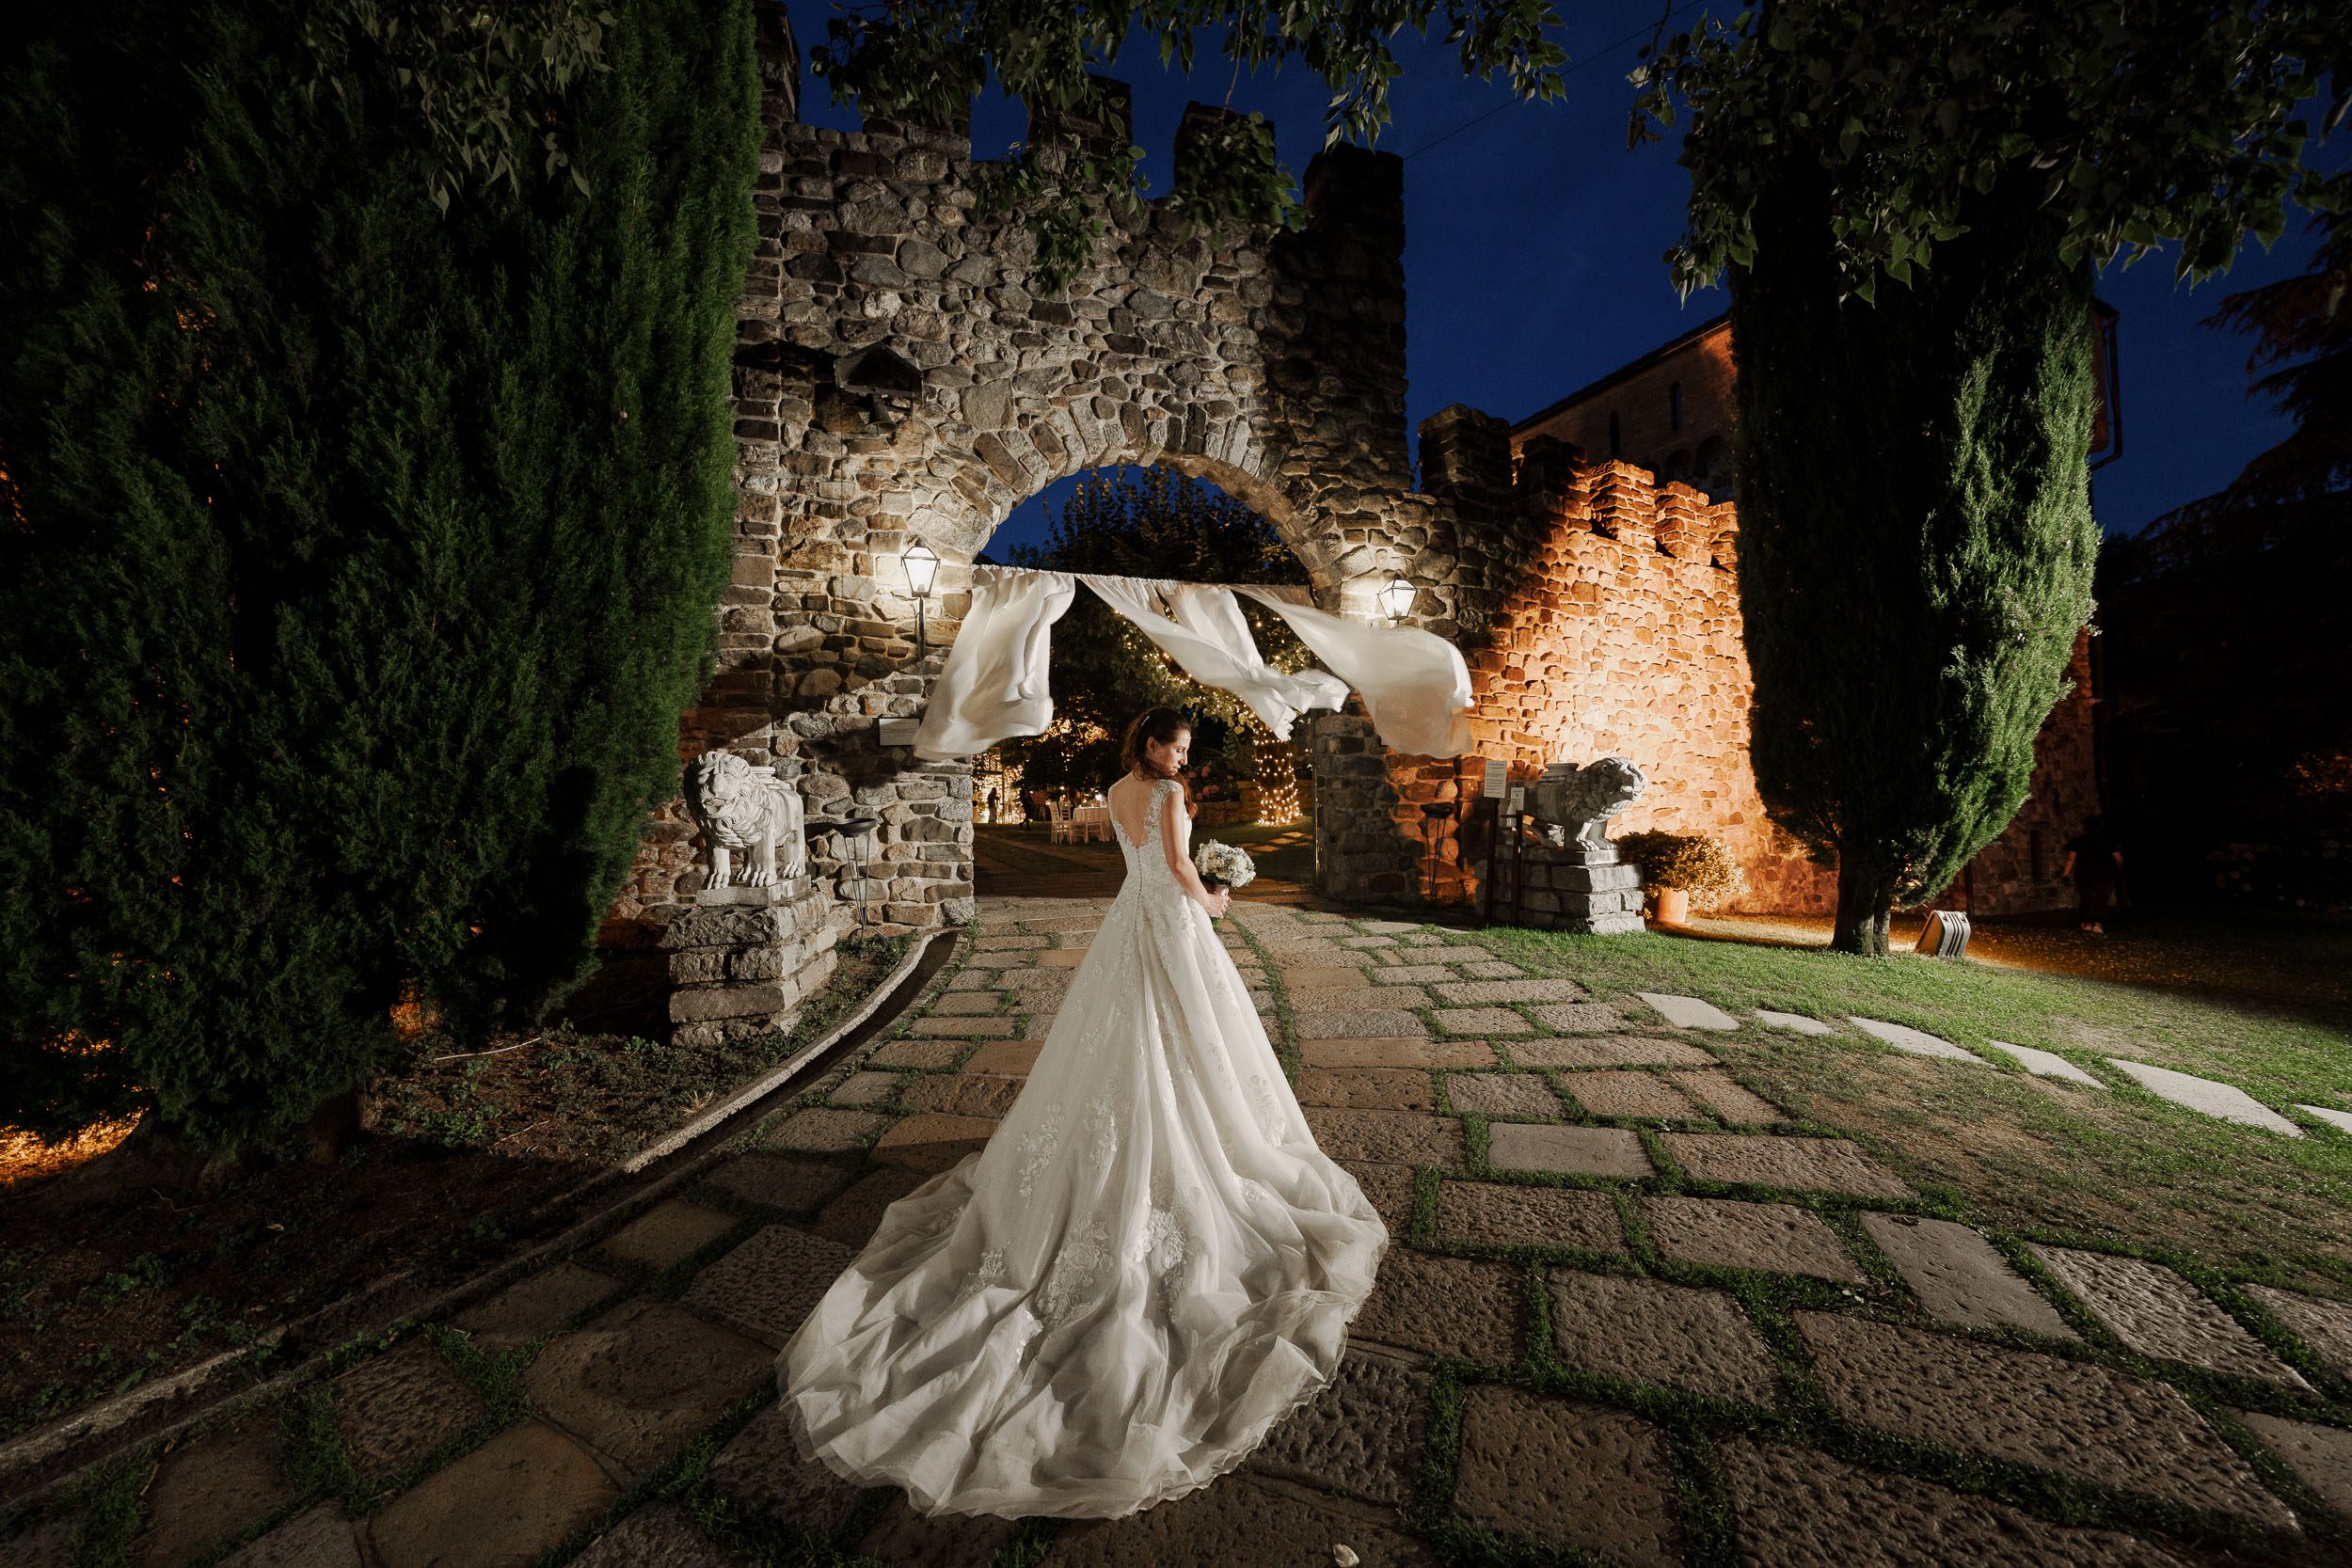 location matrimoni,locations matrimoni,location matrimoni lago di como,location matrimoni lago maggiore,location per matrimoni